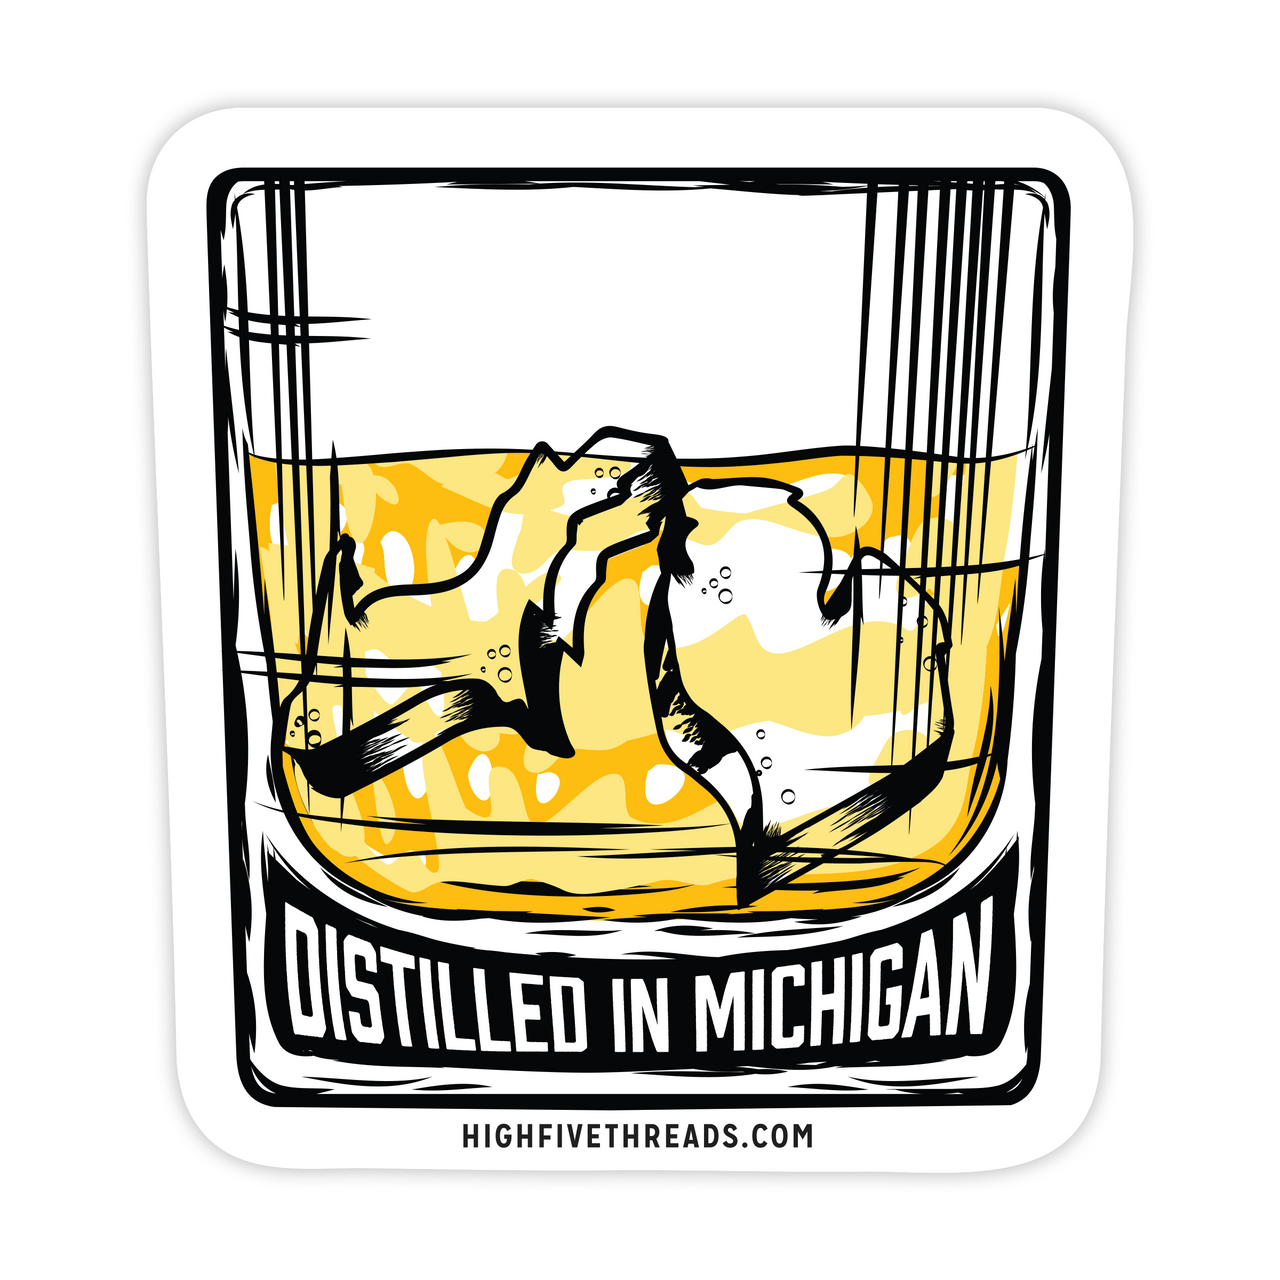 Distilled in Michigan Sticker